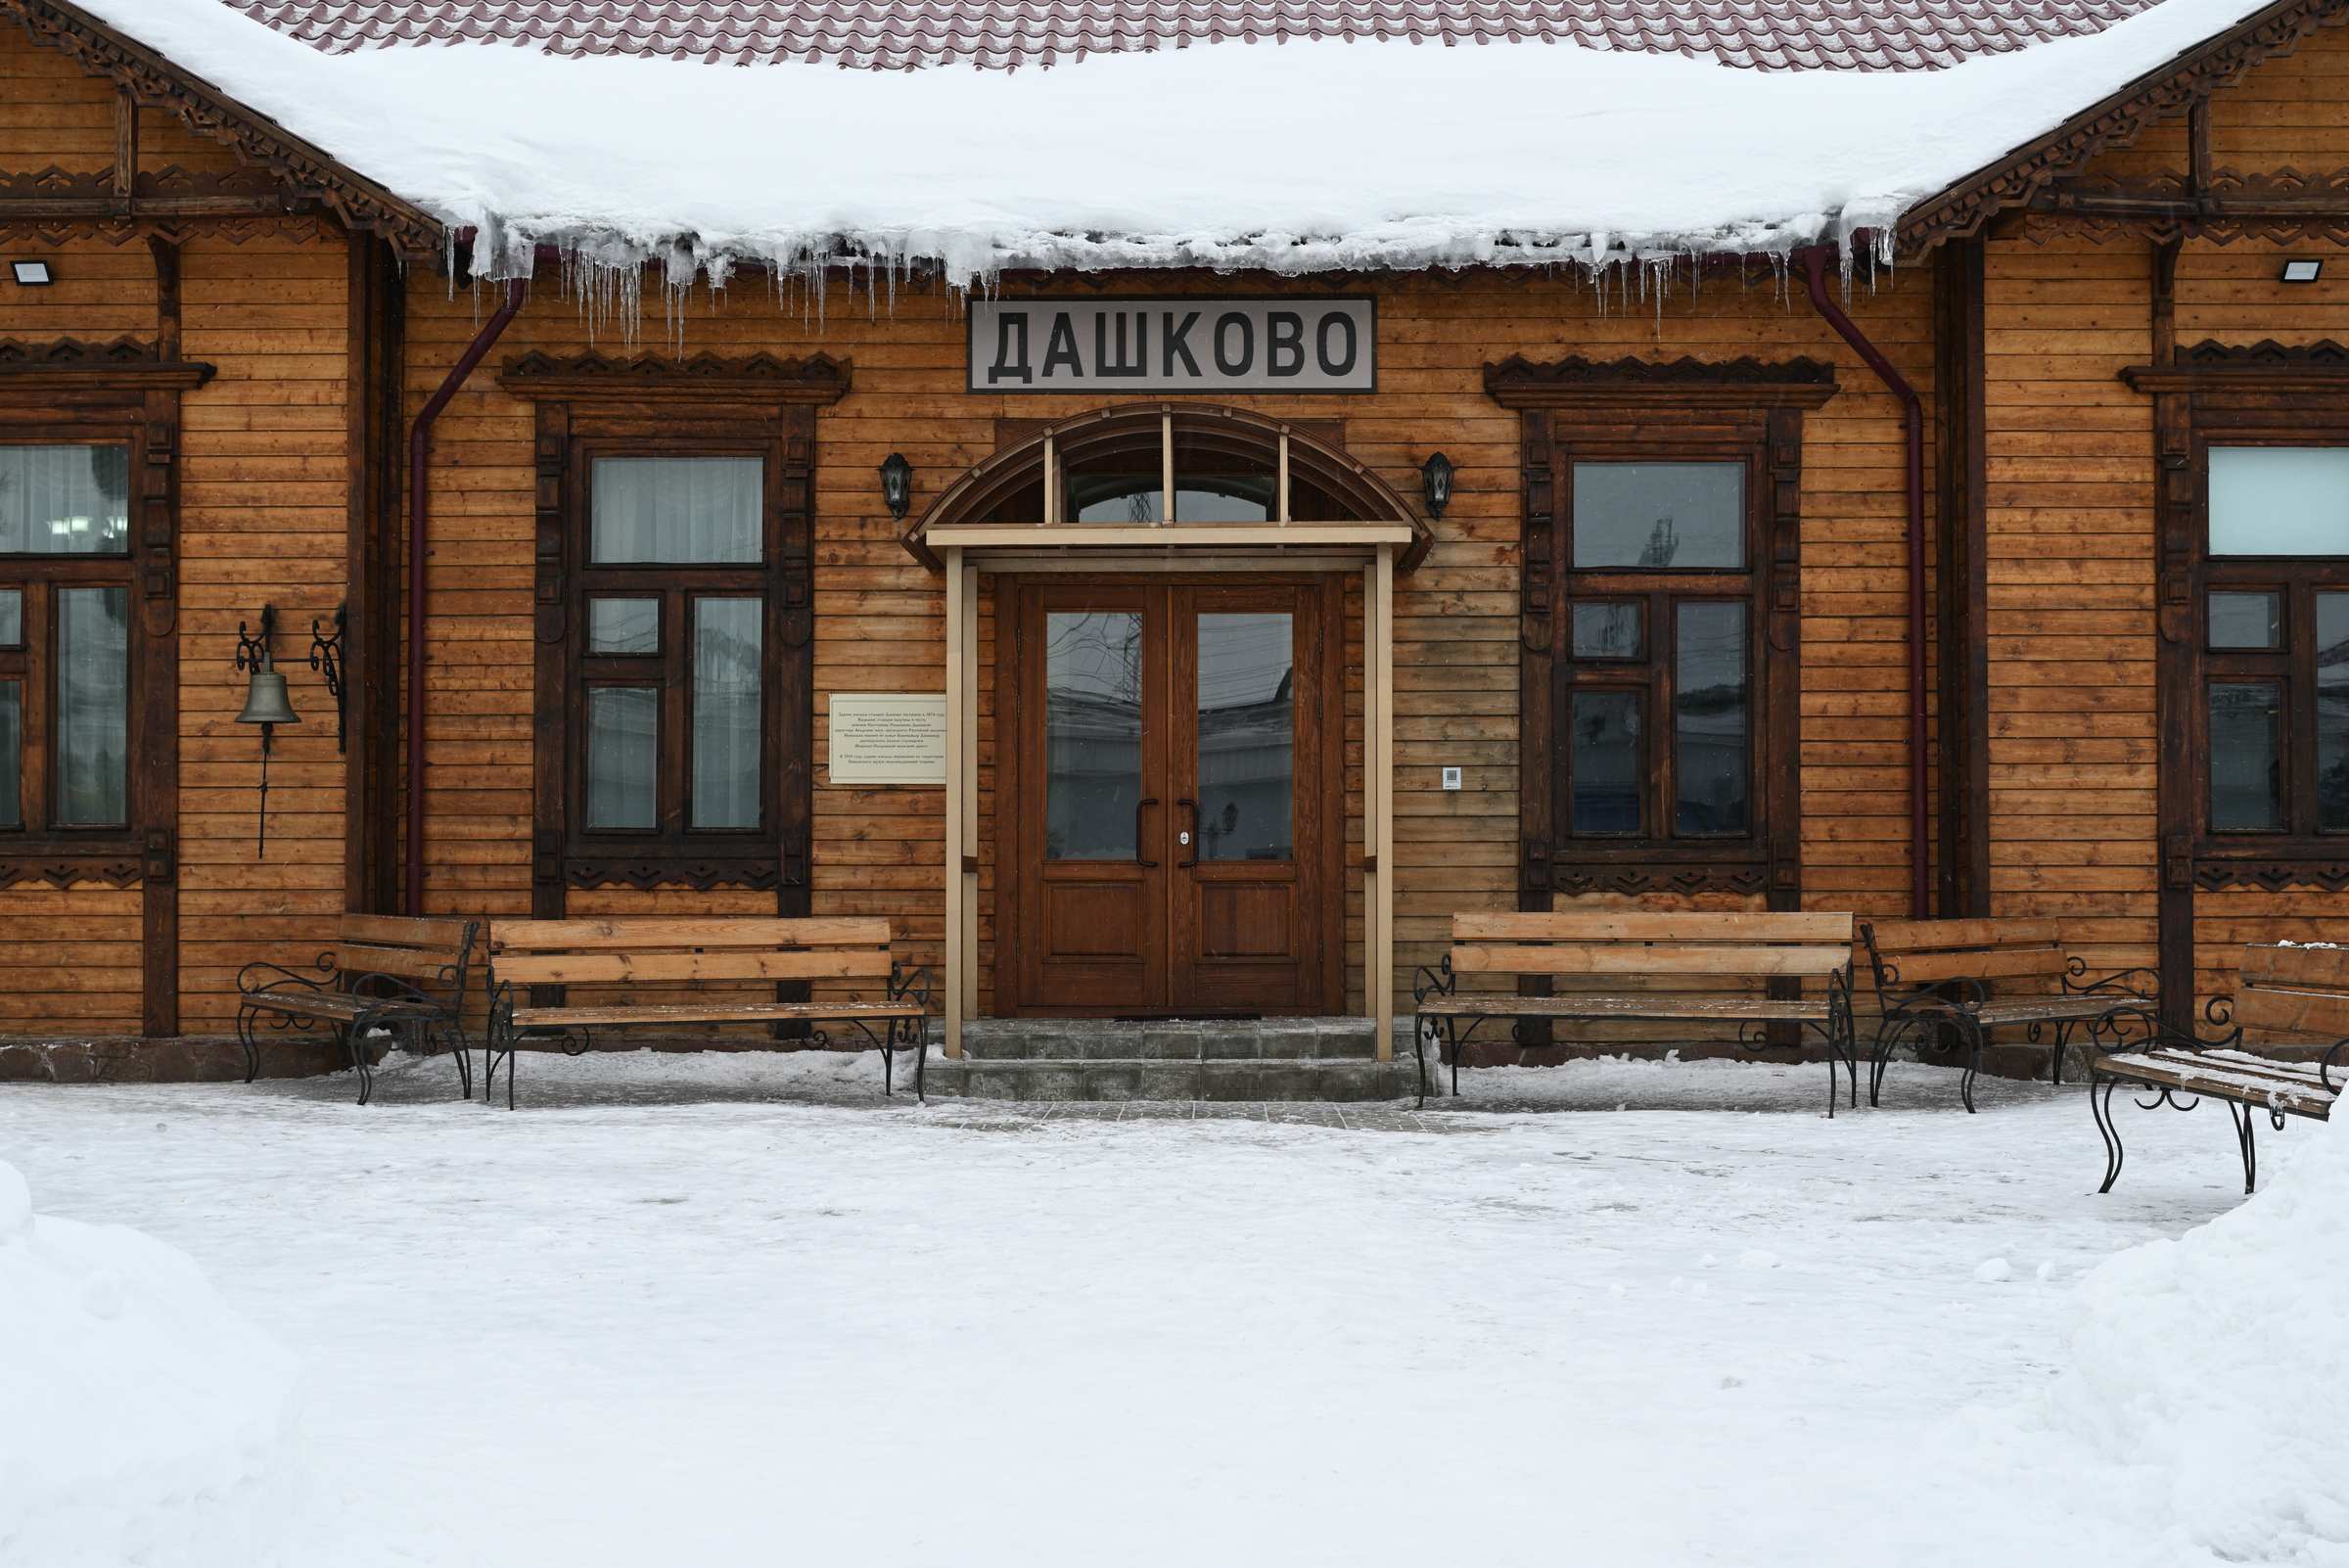 Самара. Поволжский музей железнодорожной техники зимой. Здание вокзала станции Дашково.